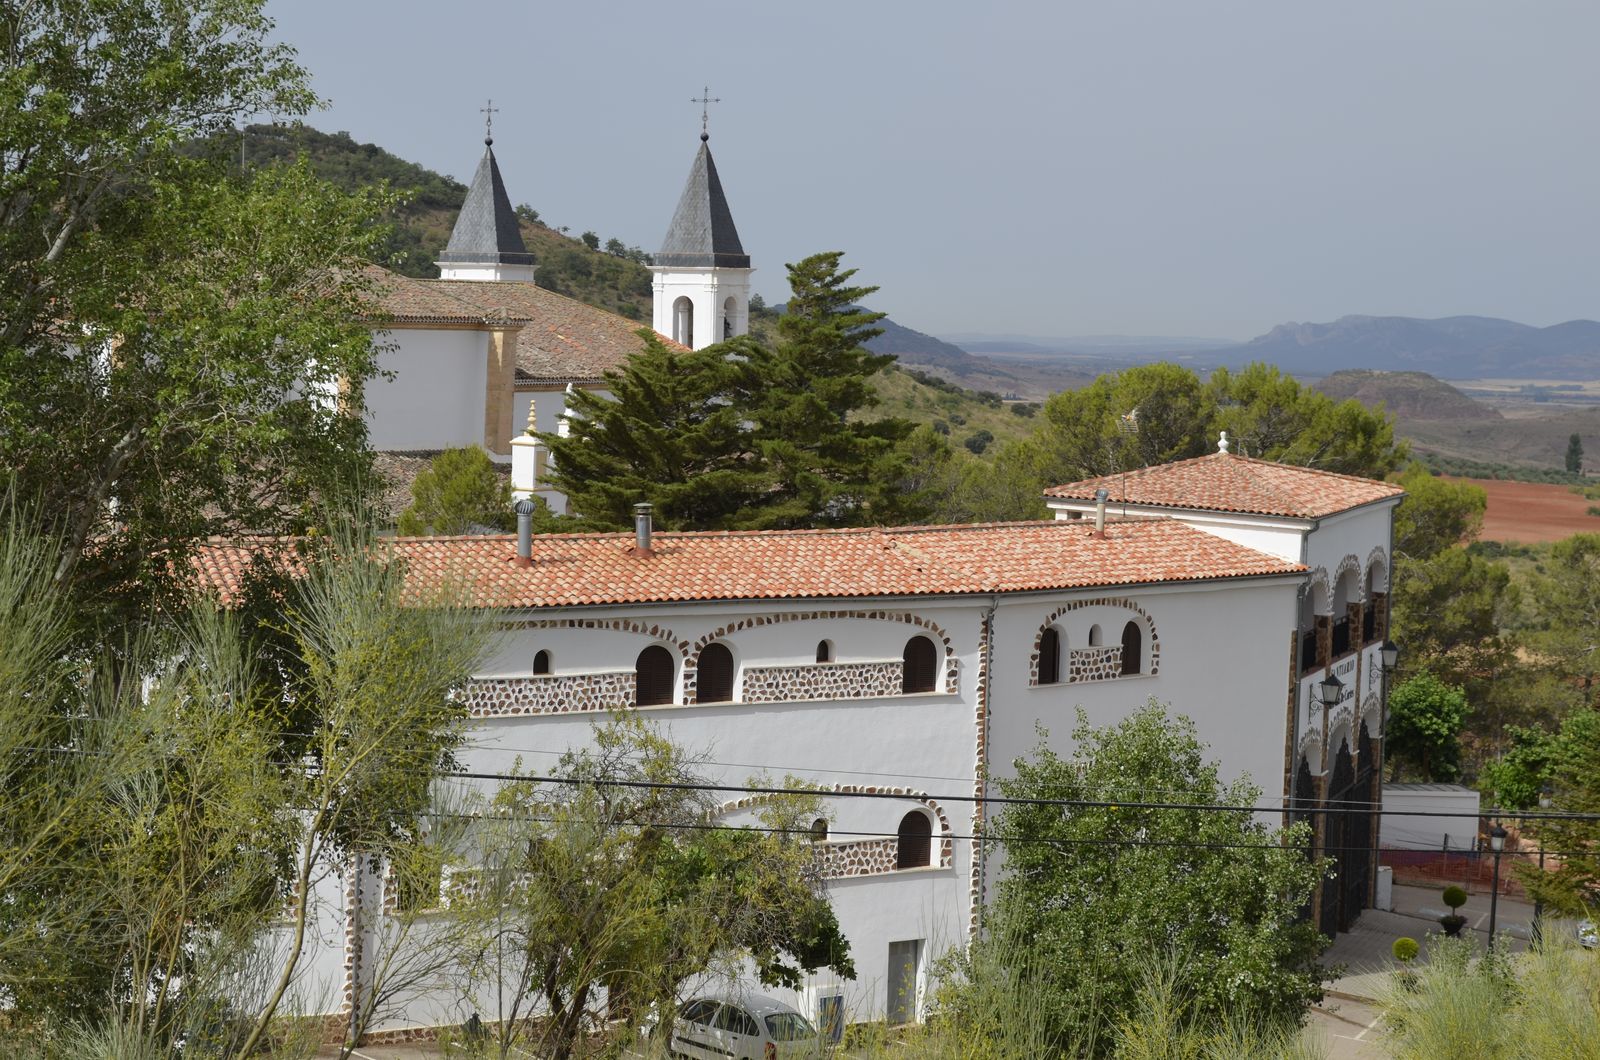 Santuario de la Virgen de Cortes